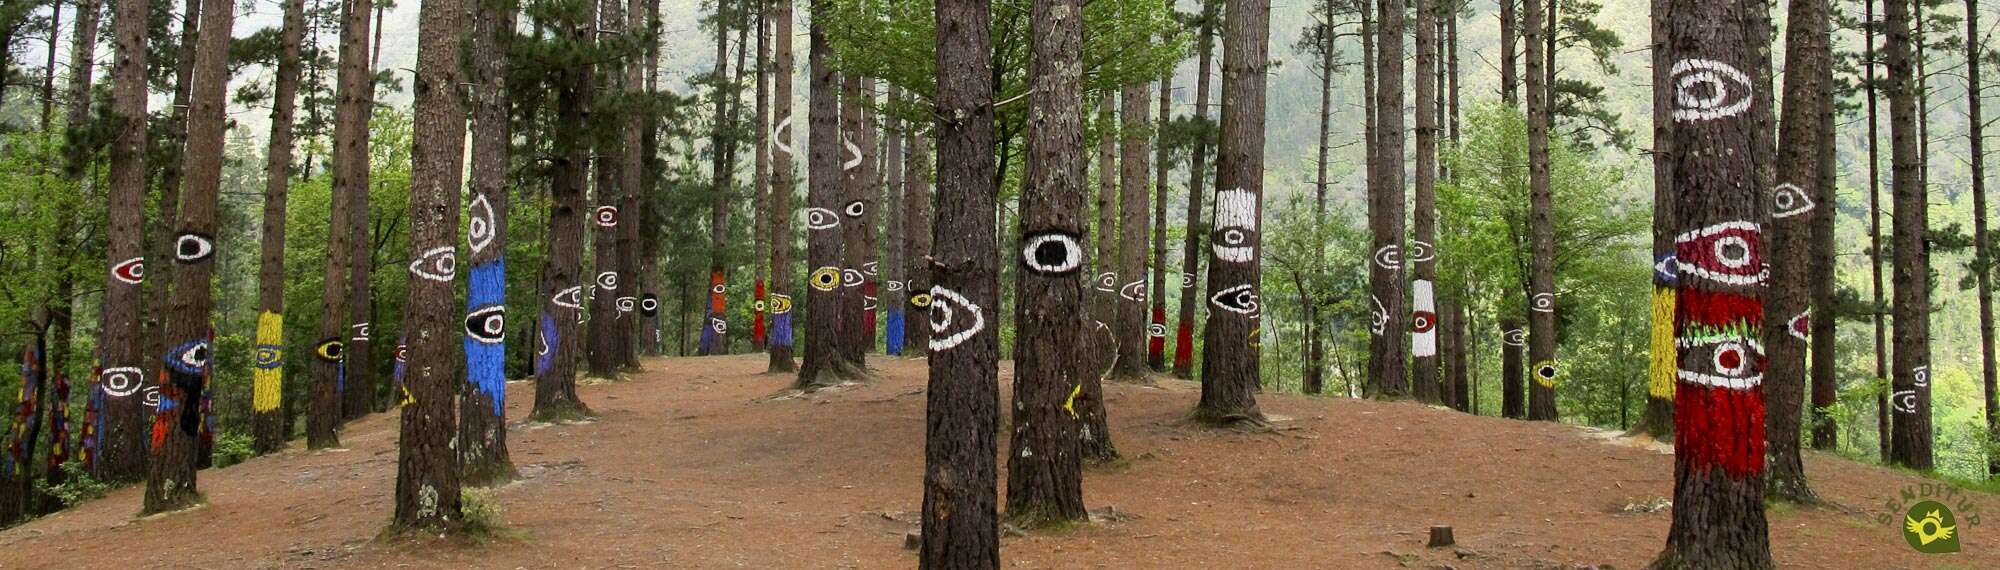 Bosque Pintado de Oma